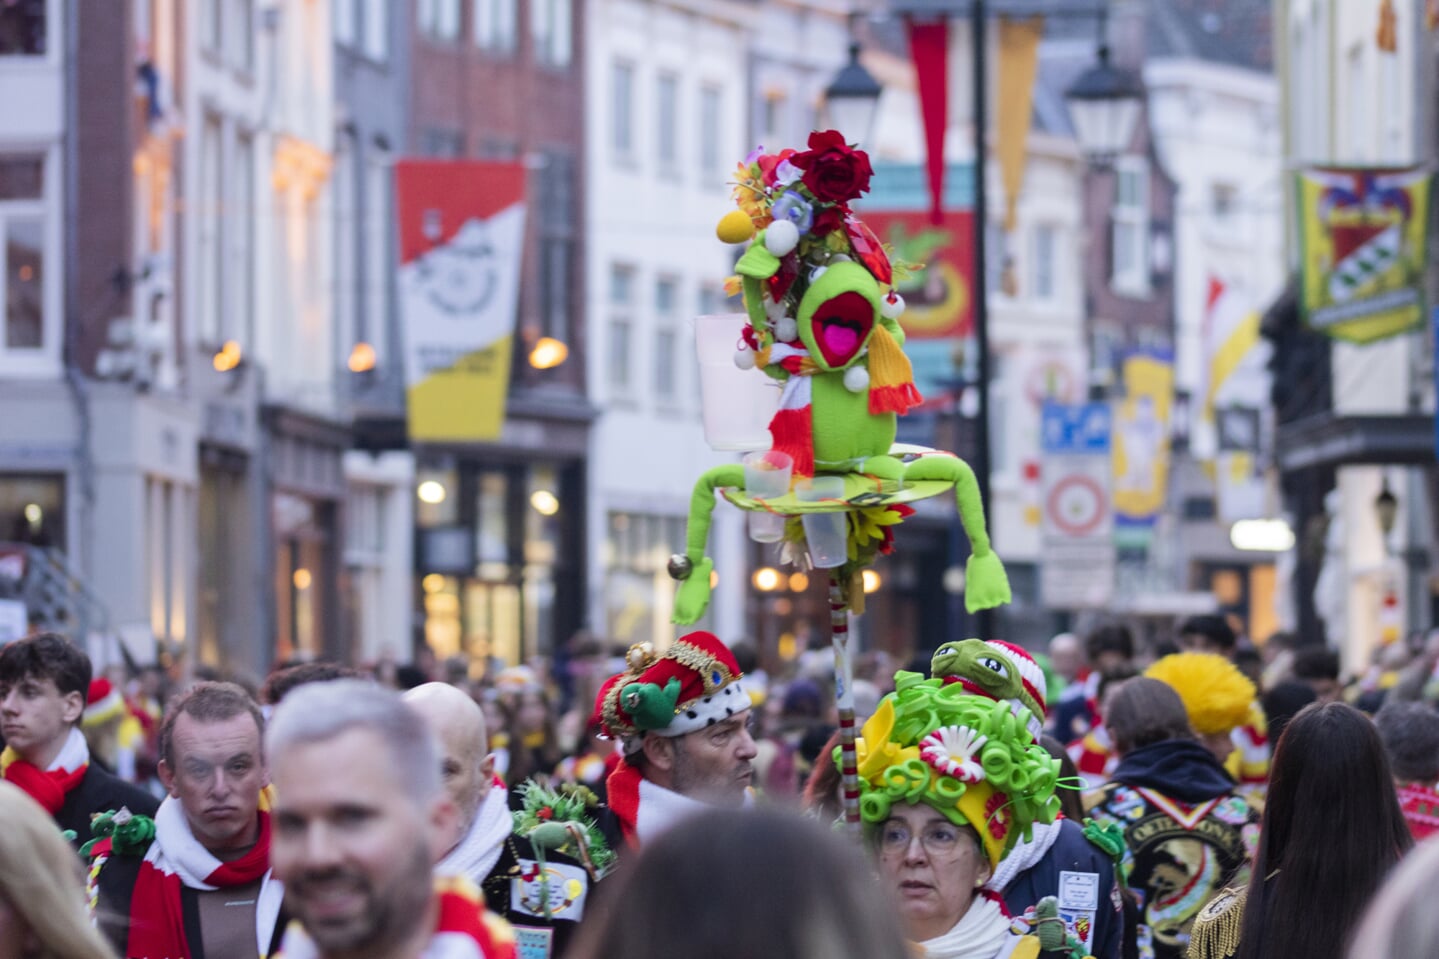 Het was weer bijzonder gezellig op de zaterdag van carnaval in Oeteldonk.